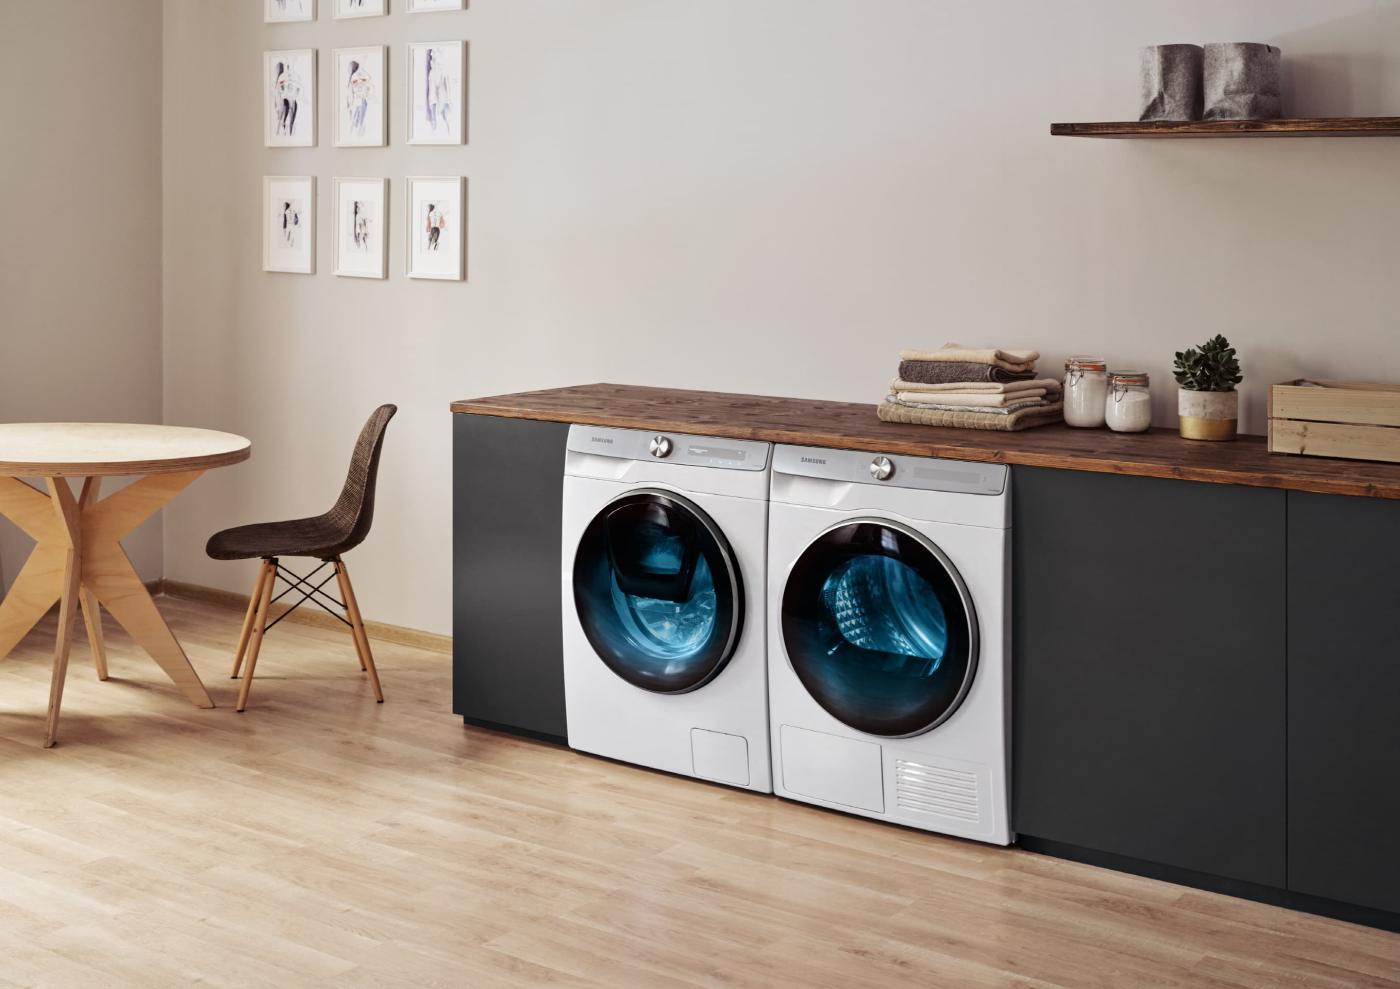 Erinevat sorti pesumasinate juures on kõige suuremaks energiakulutajaks vee temperatuur. Nii nõudepesumasinate kui ka pesumasinate põhiline aur läheb just vee soojendamisele, seega võimalusel tasub kaaluda jahedama veega pesemist.